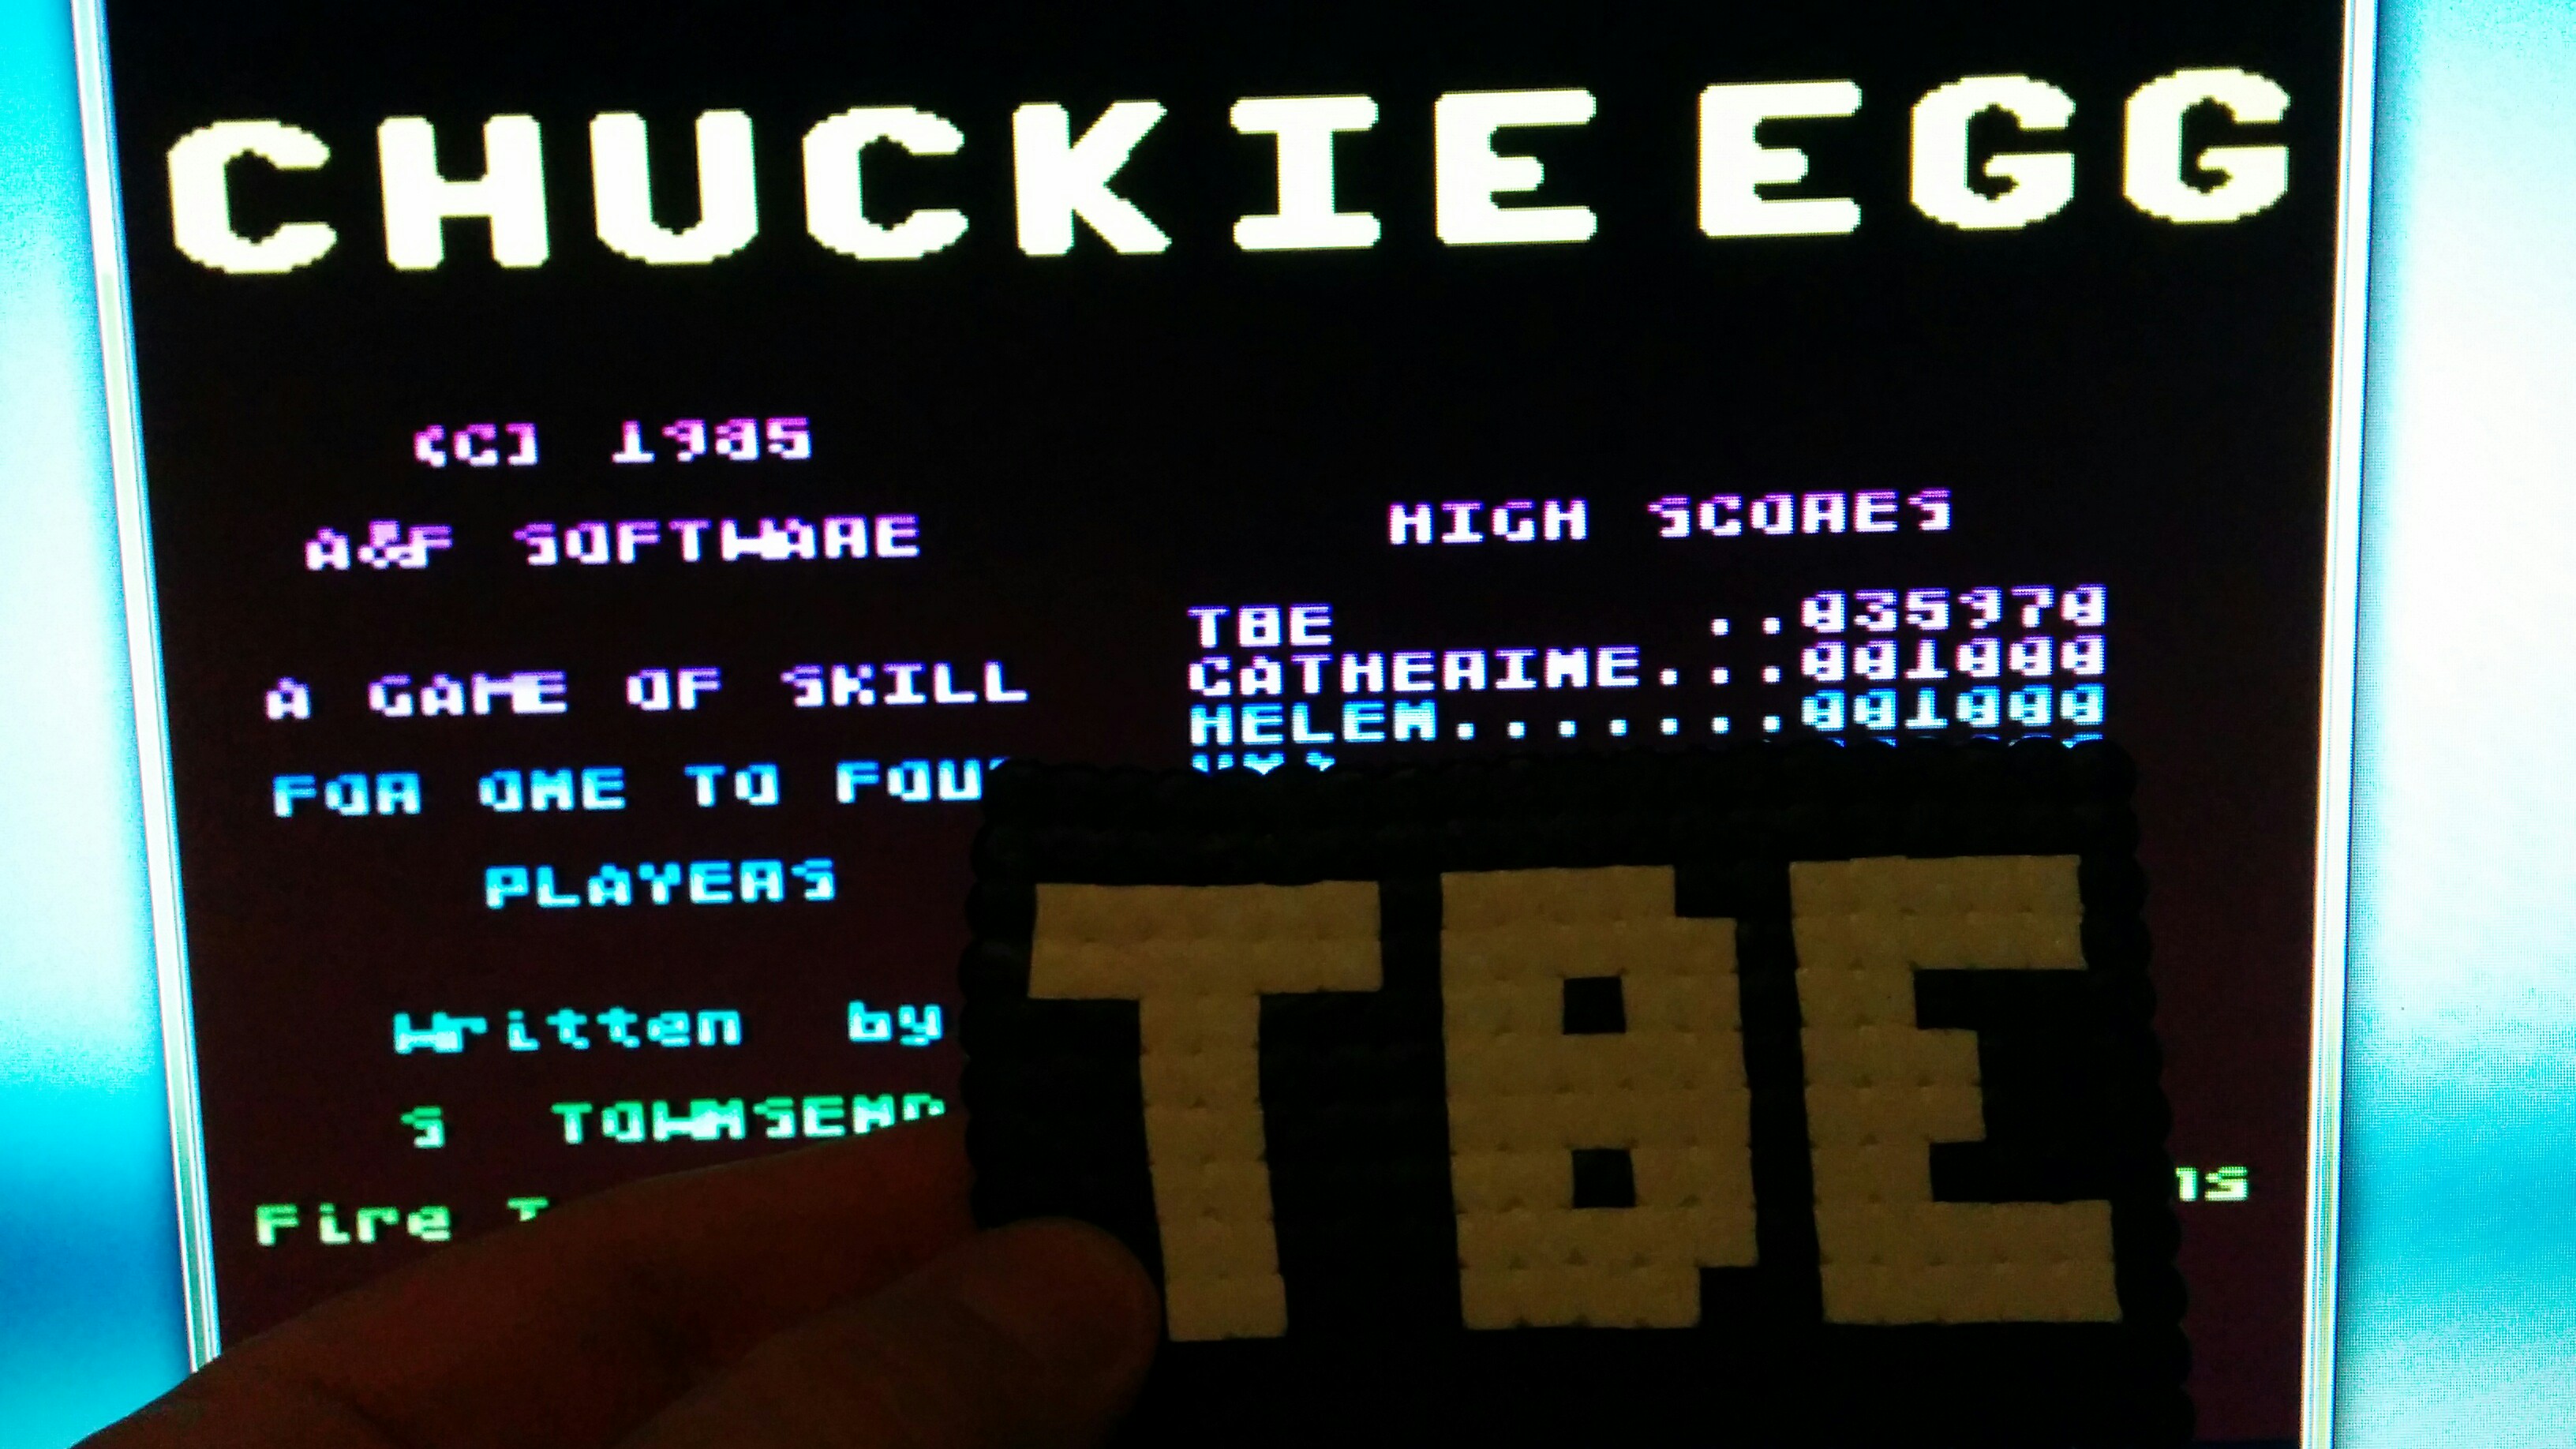 Sixx: Chuckie Egg (Atari 400/800/XL/XE Emulated) 35,970 points on 2014-10-07 13:26:10